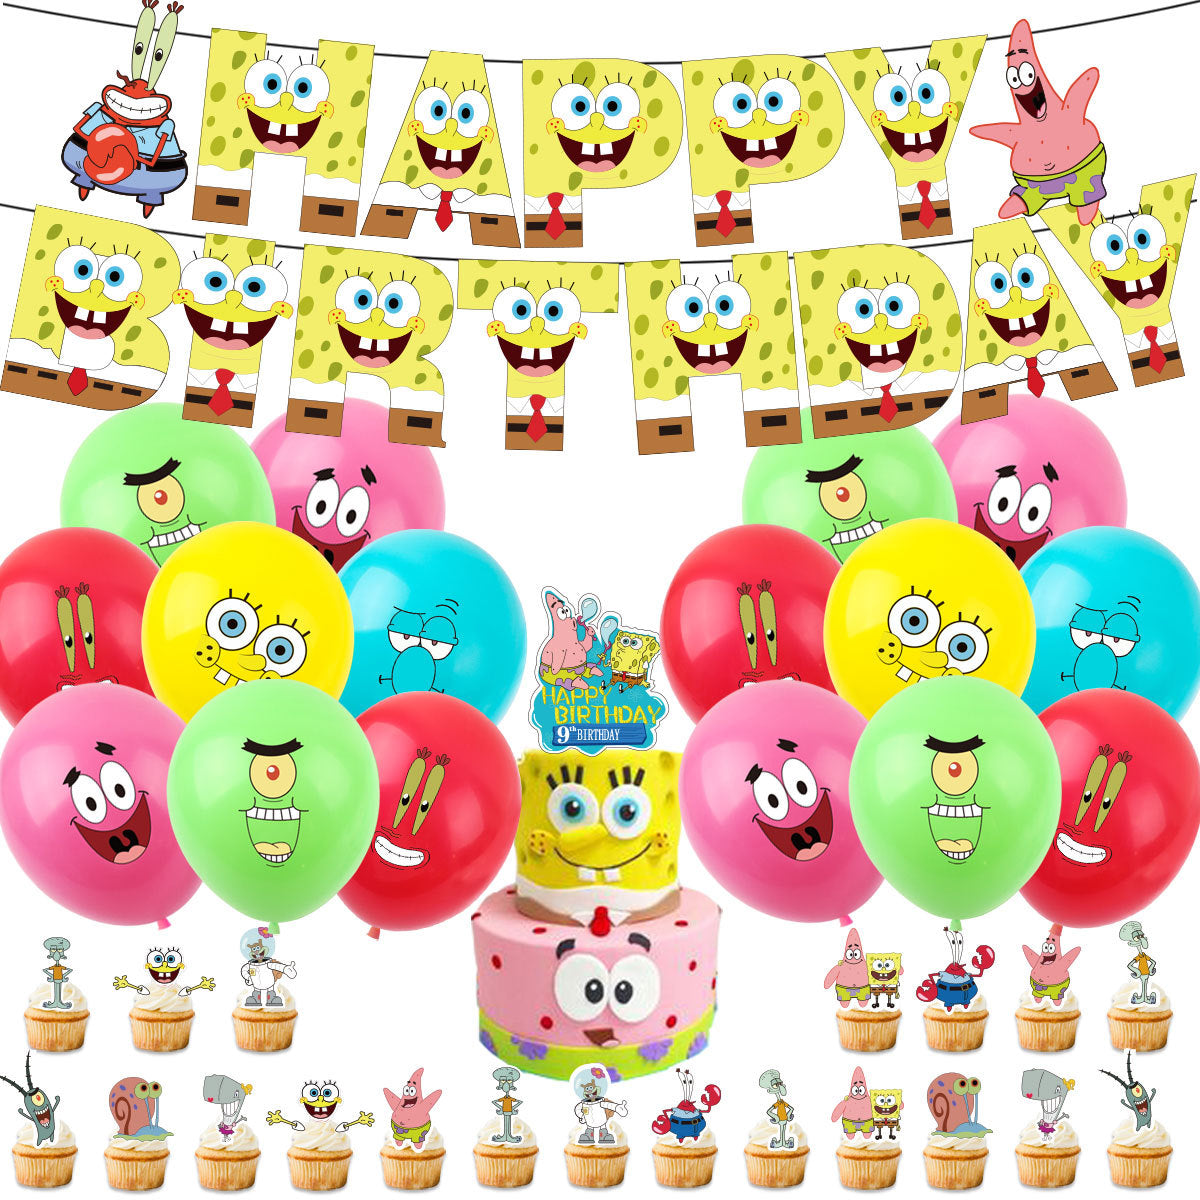 SpongeBOB Birthday party set